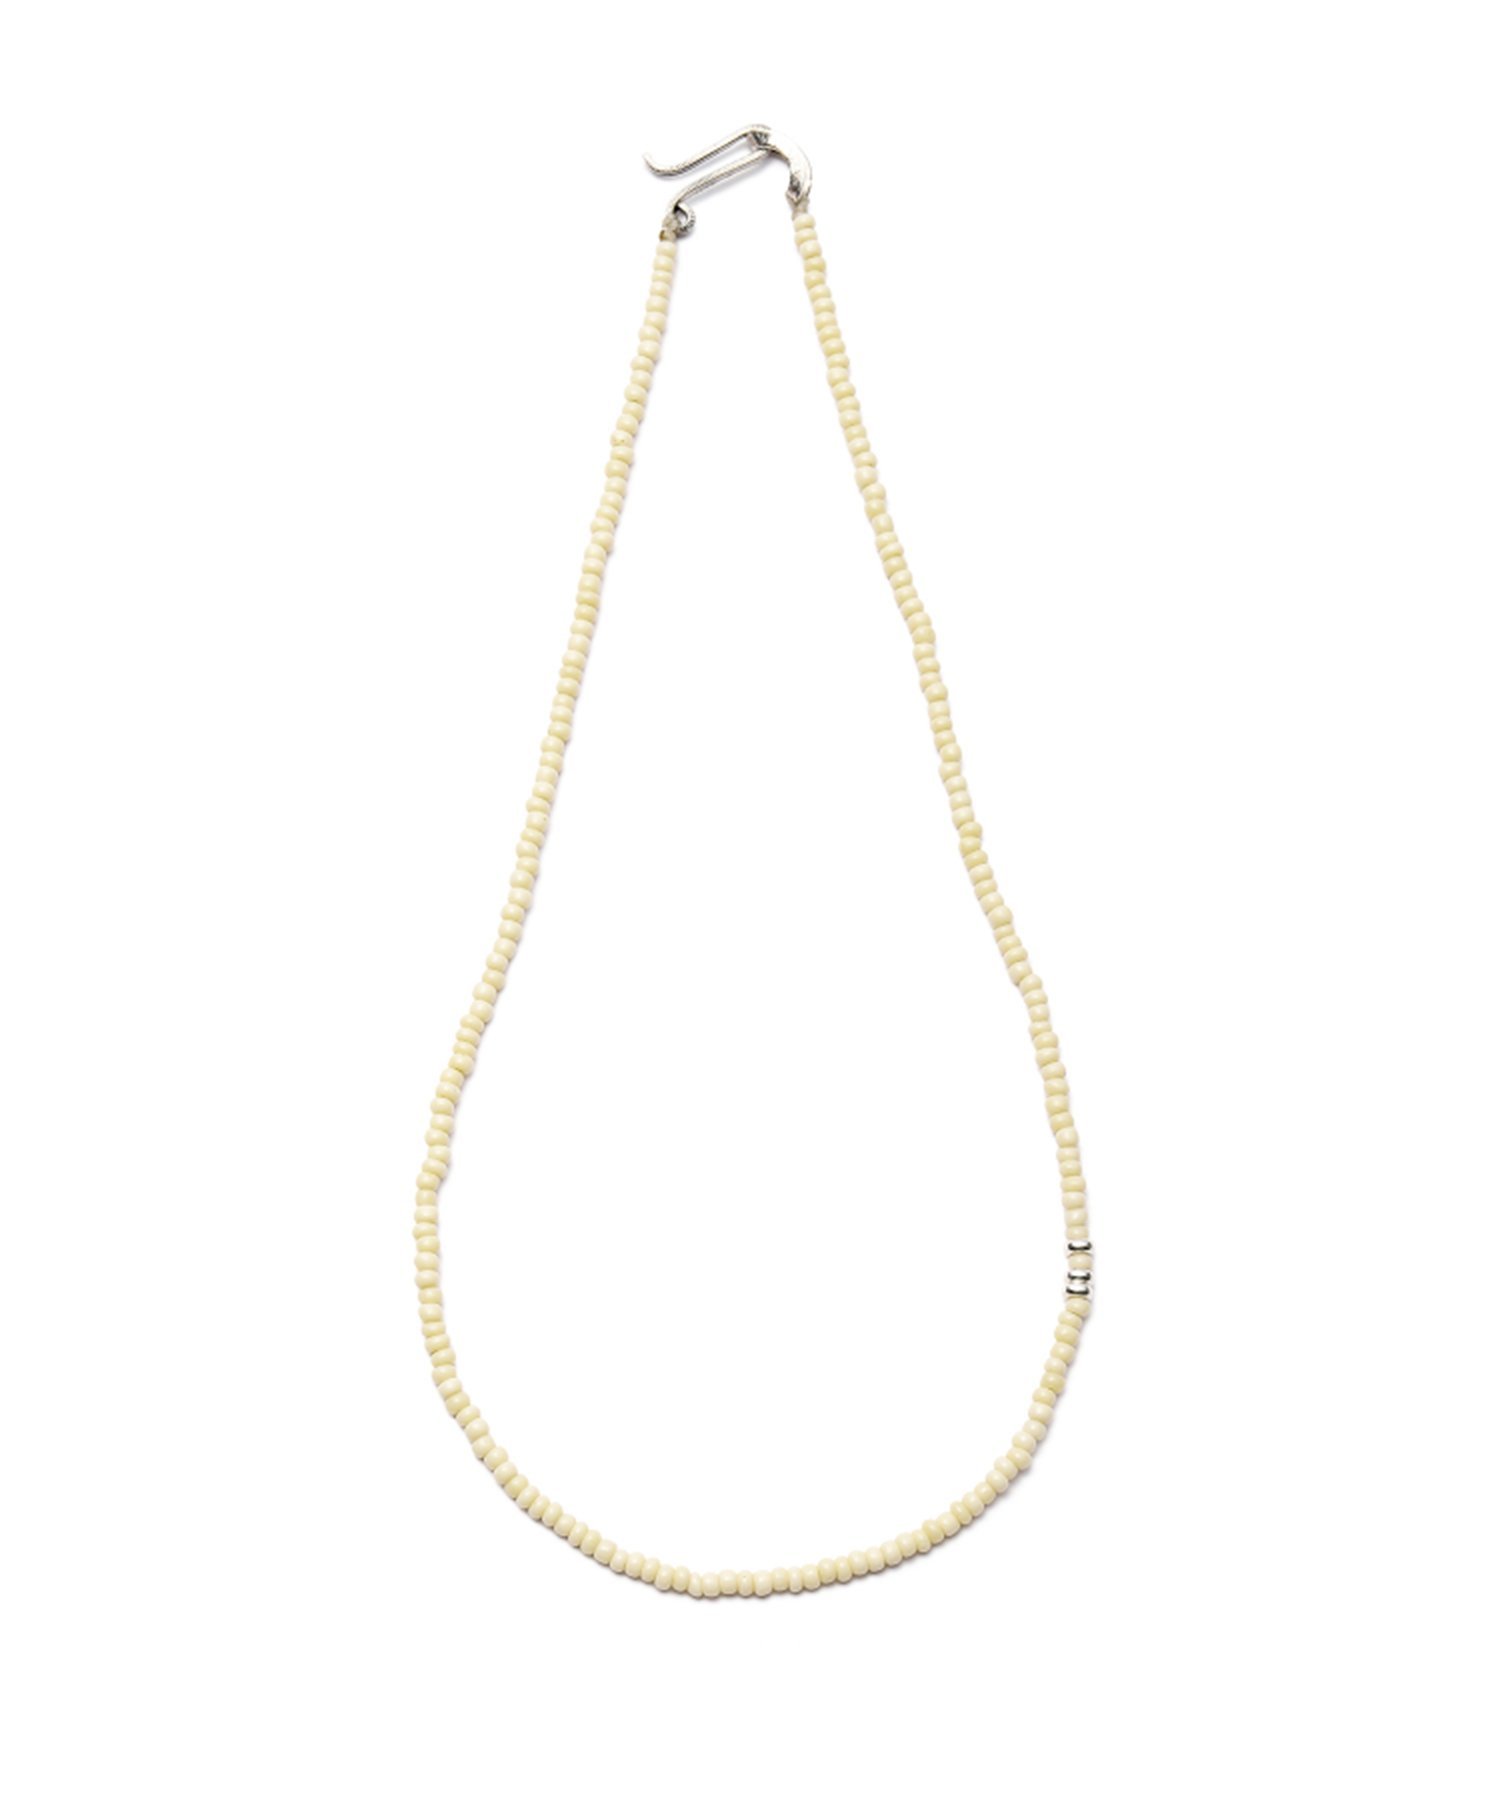 Dough. (W)Beads necklace 50cm ^gXRZvgXgA ANZT[Erv lbNX CG[yz